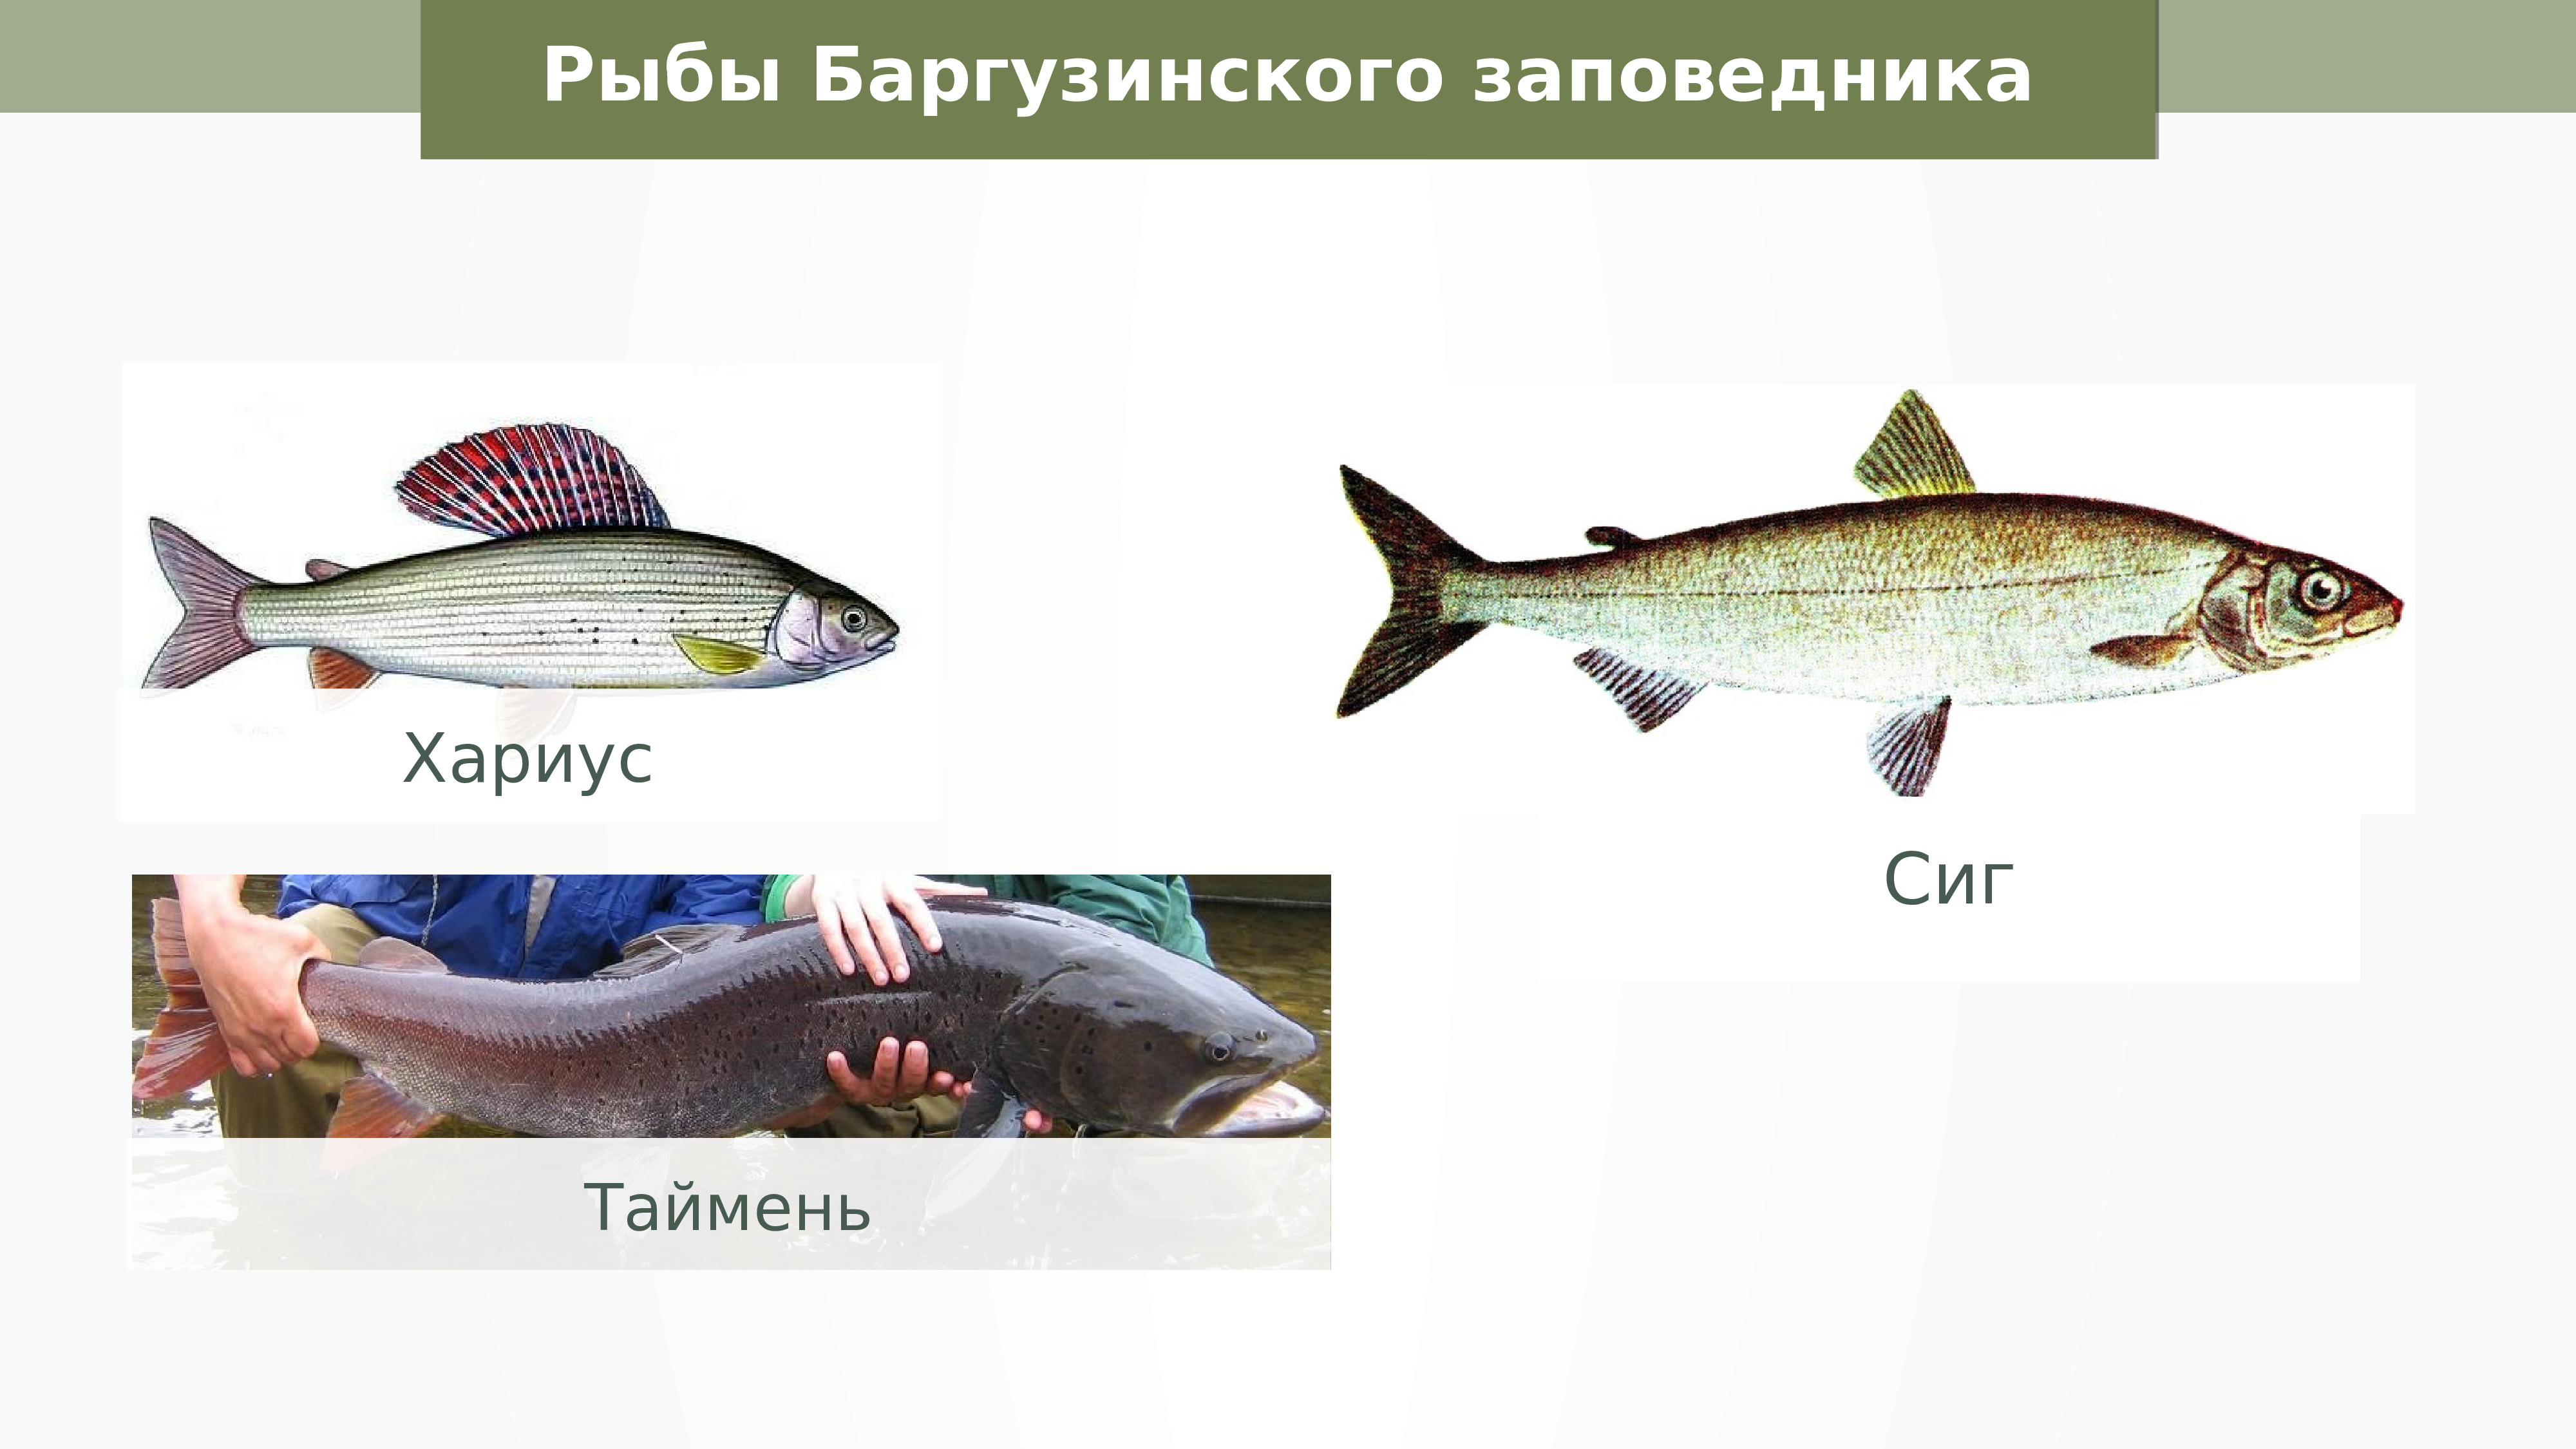 Рыбы баргузинского заповедника сиг